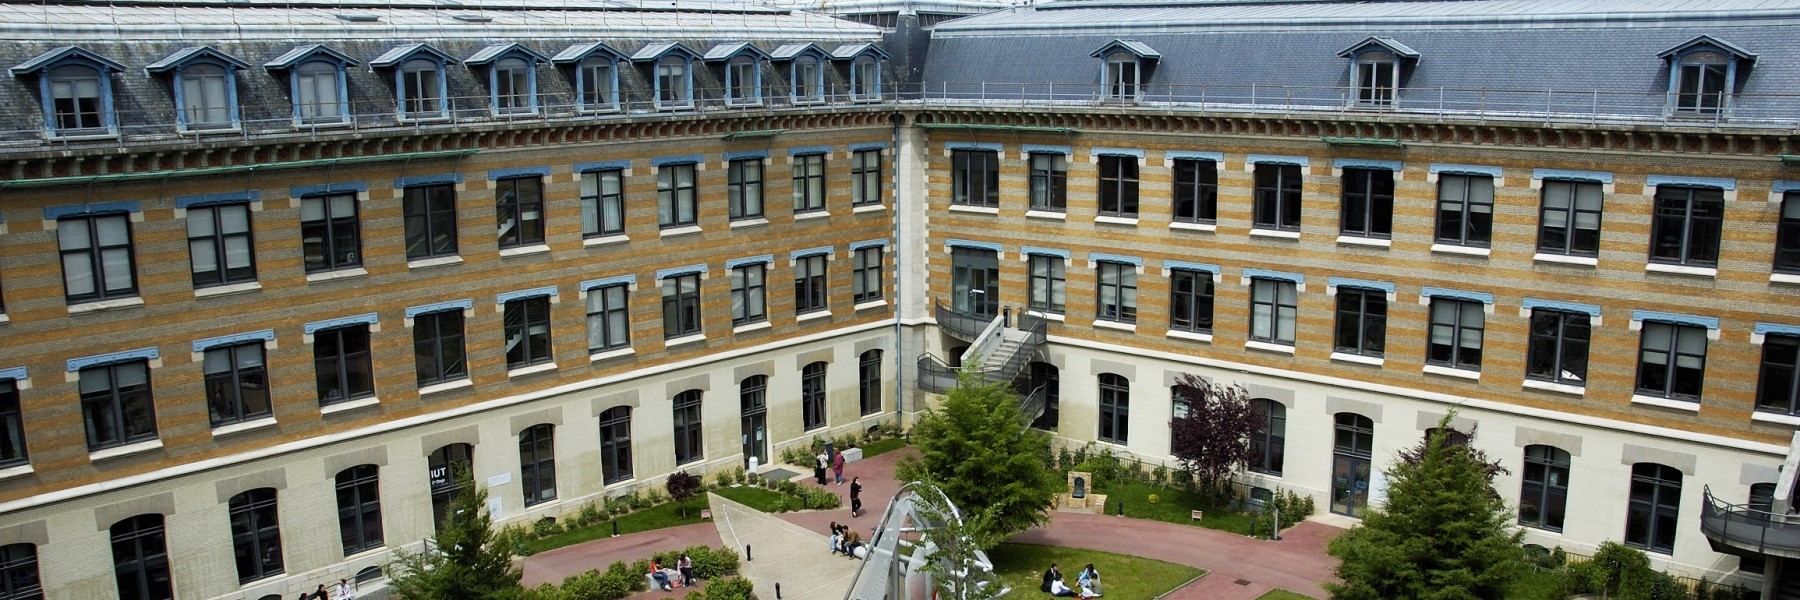 Association du Collège de Droit, Lyon III